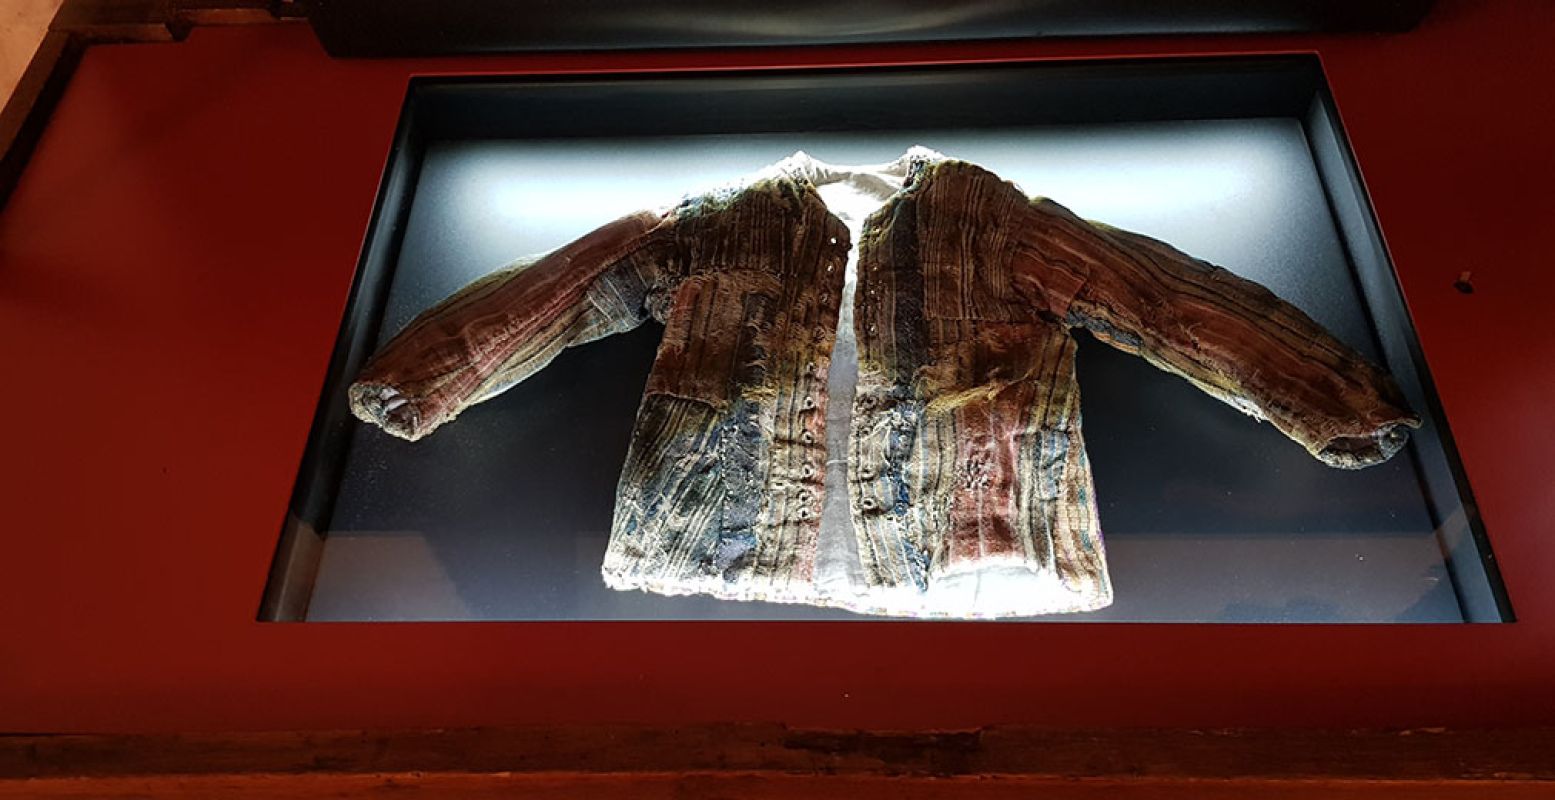 Pronkstuk van de Gevangenpoort: een kinderjasje uit de achttiende eeuw dat bij een restauratie werd gevonden. Gepropt in een tochtgat. Foto: DagjeWeg.NL / Tonny van Oosten